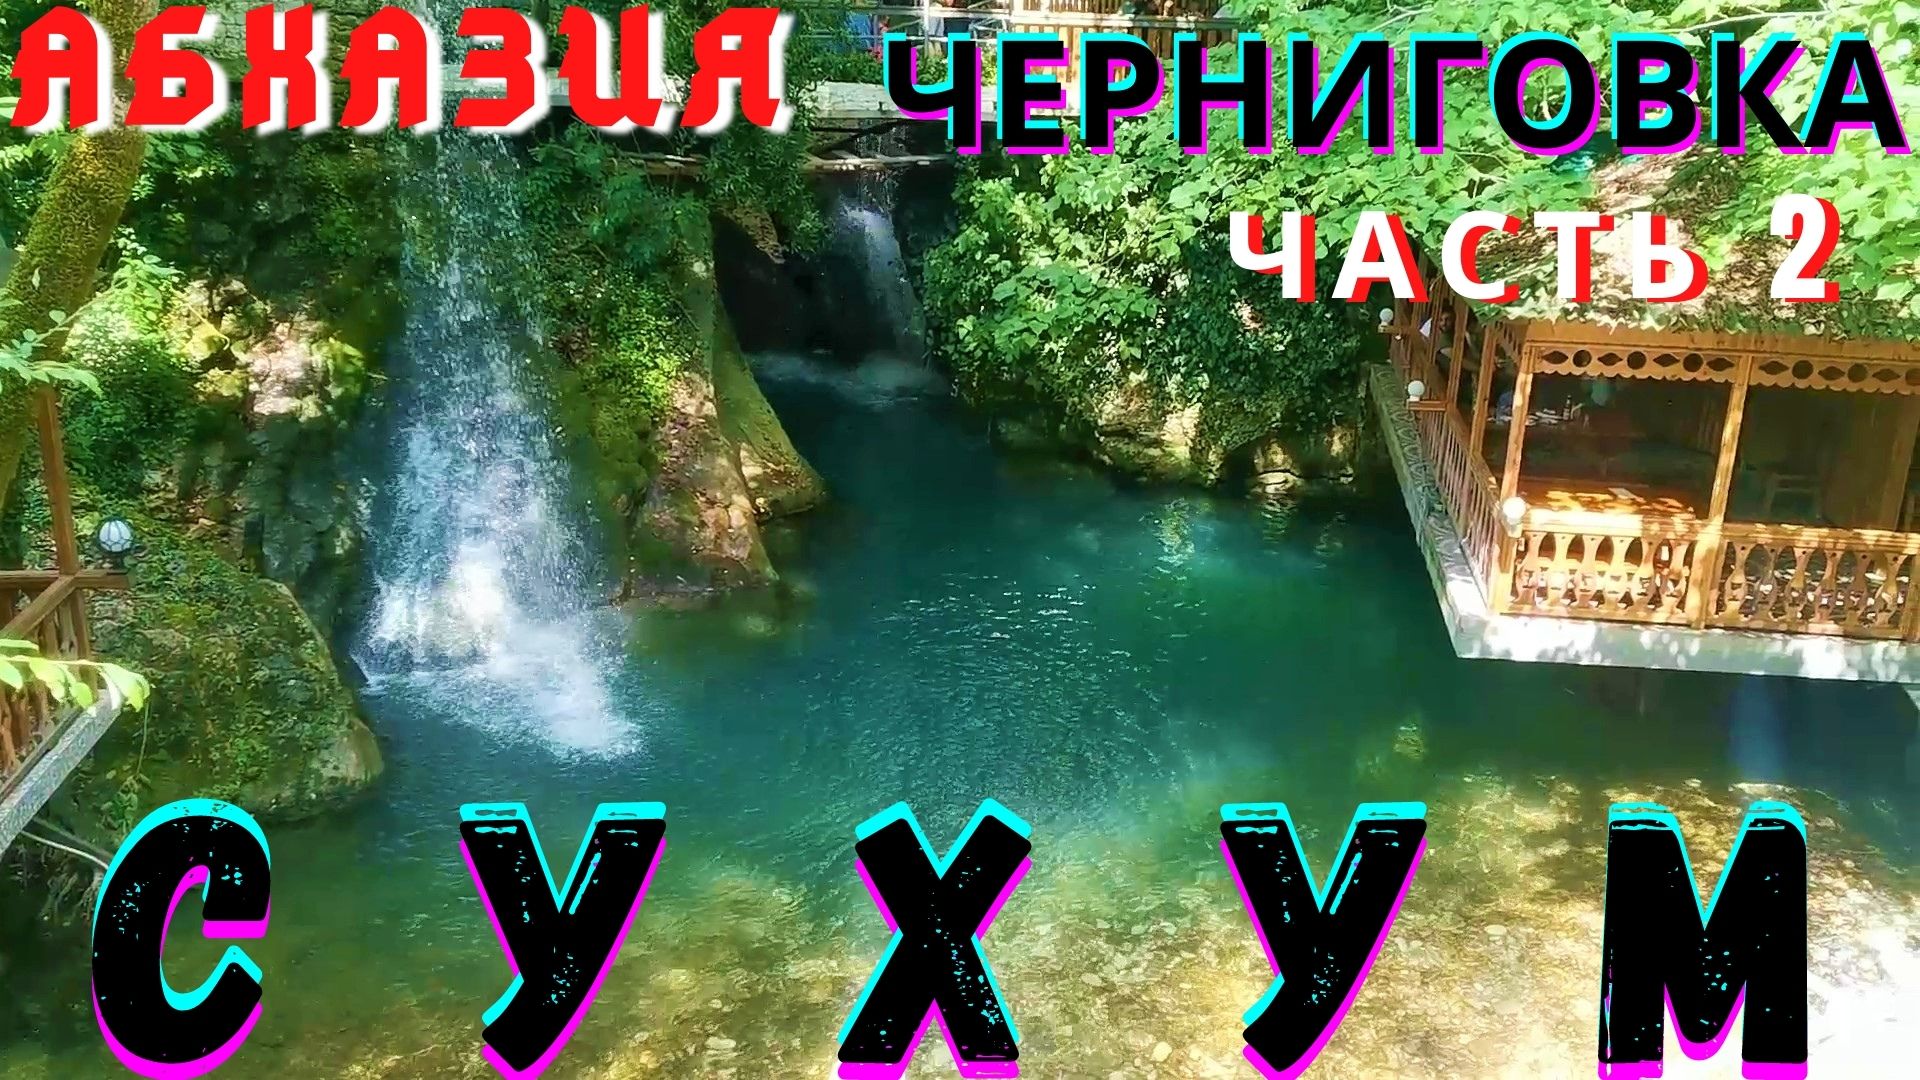 Абхазия 2021. Сказочное место в ущелье в Черниговке с водопадами, буйной рекой и шашлычками